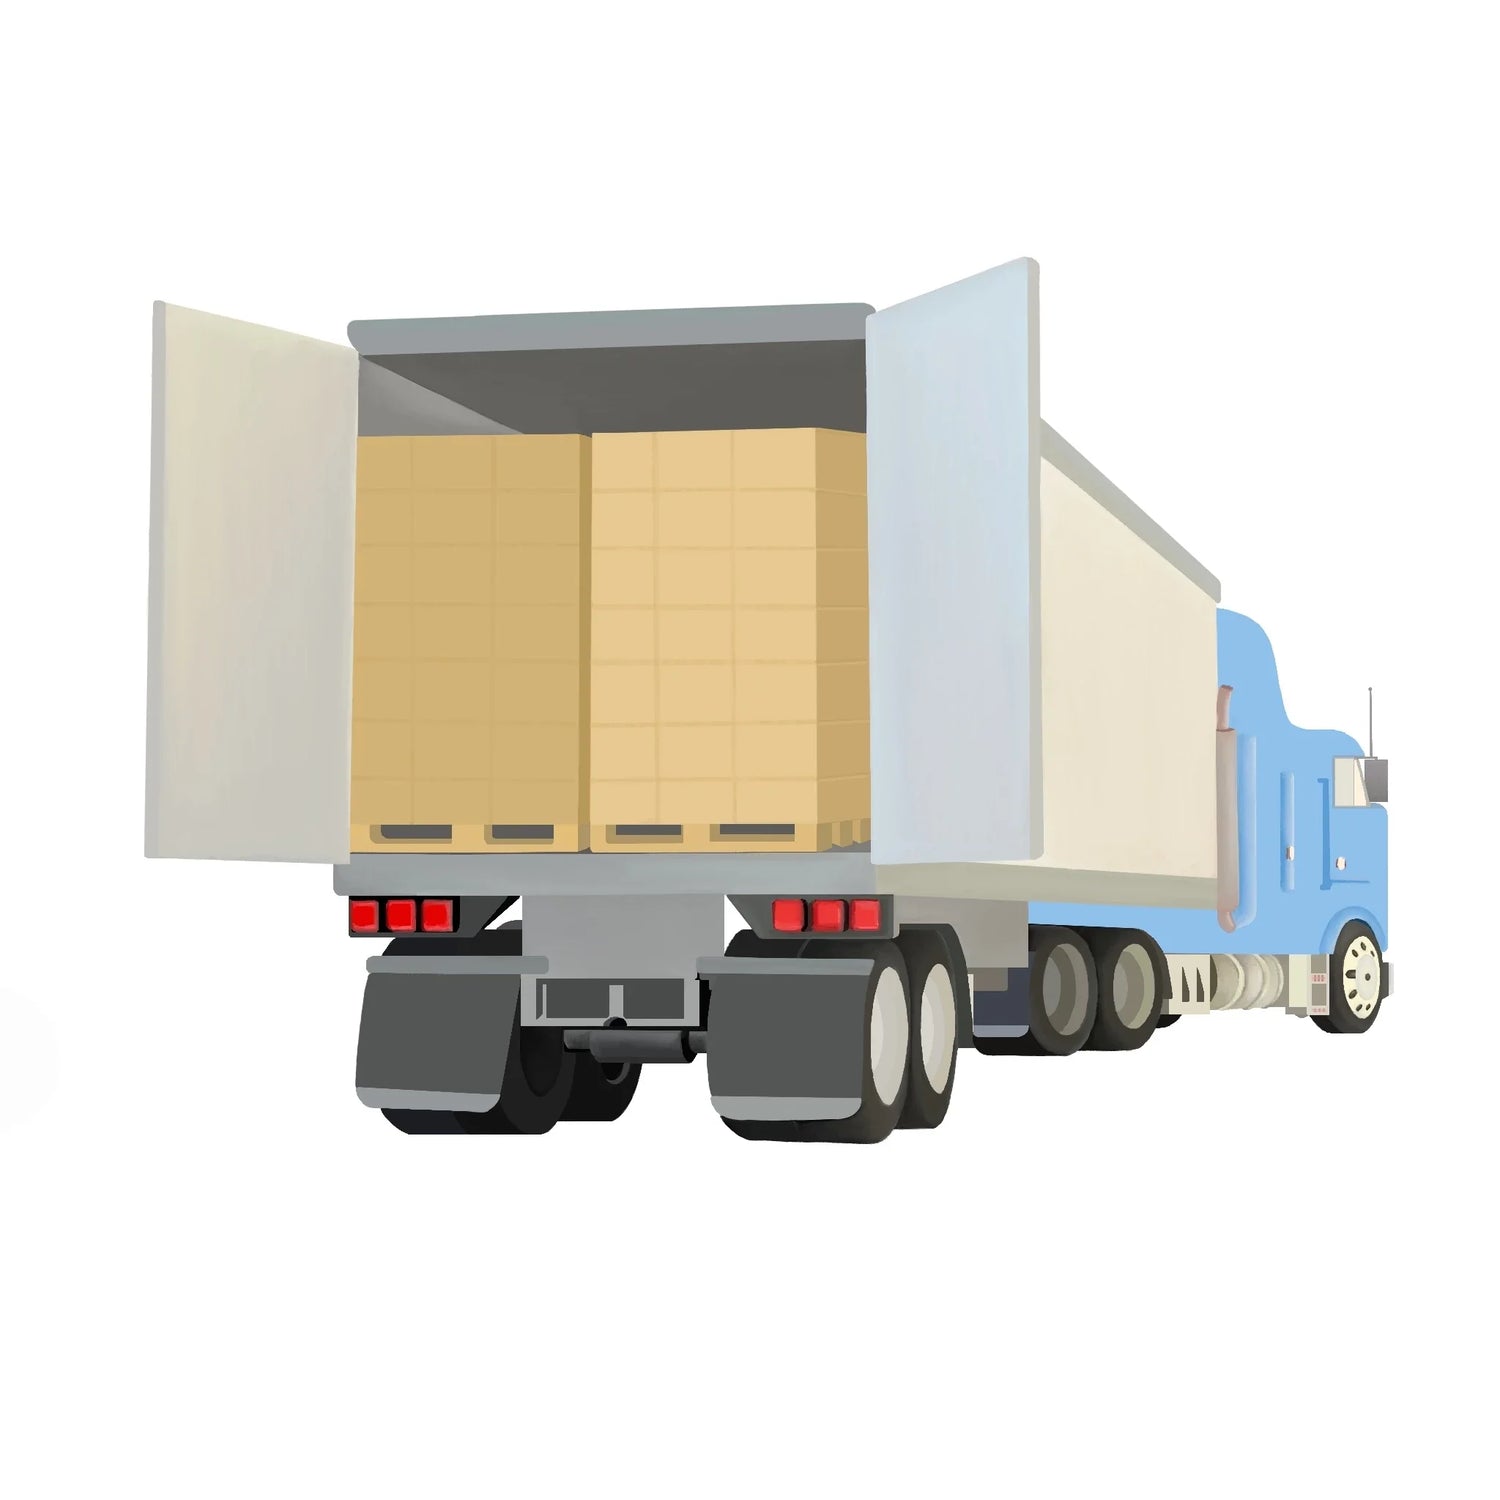 Truckloads